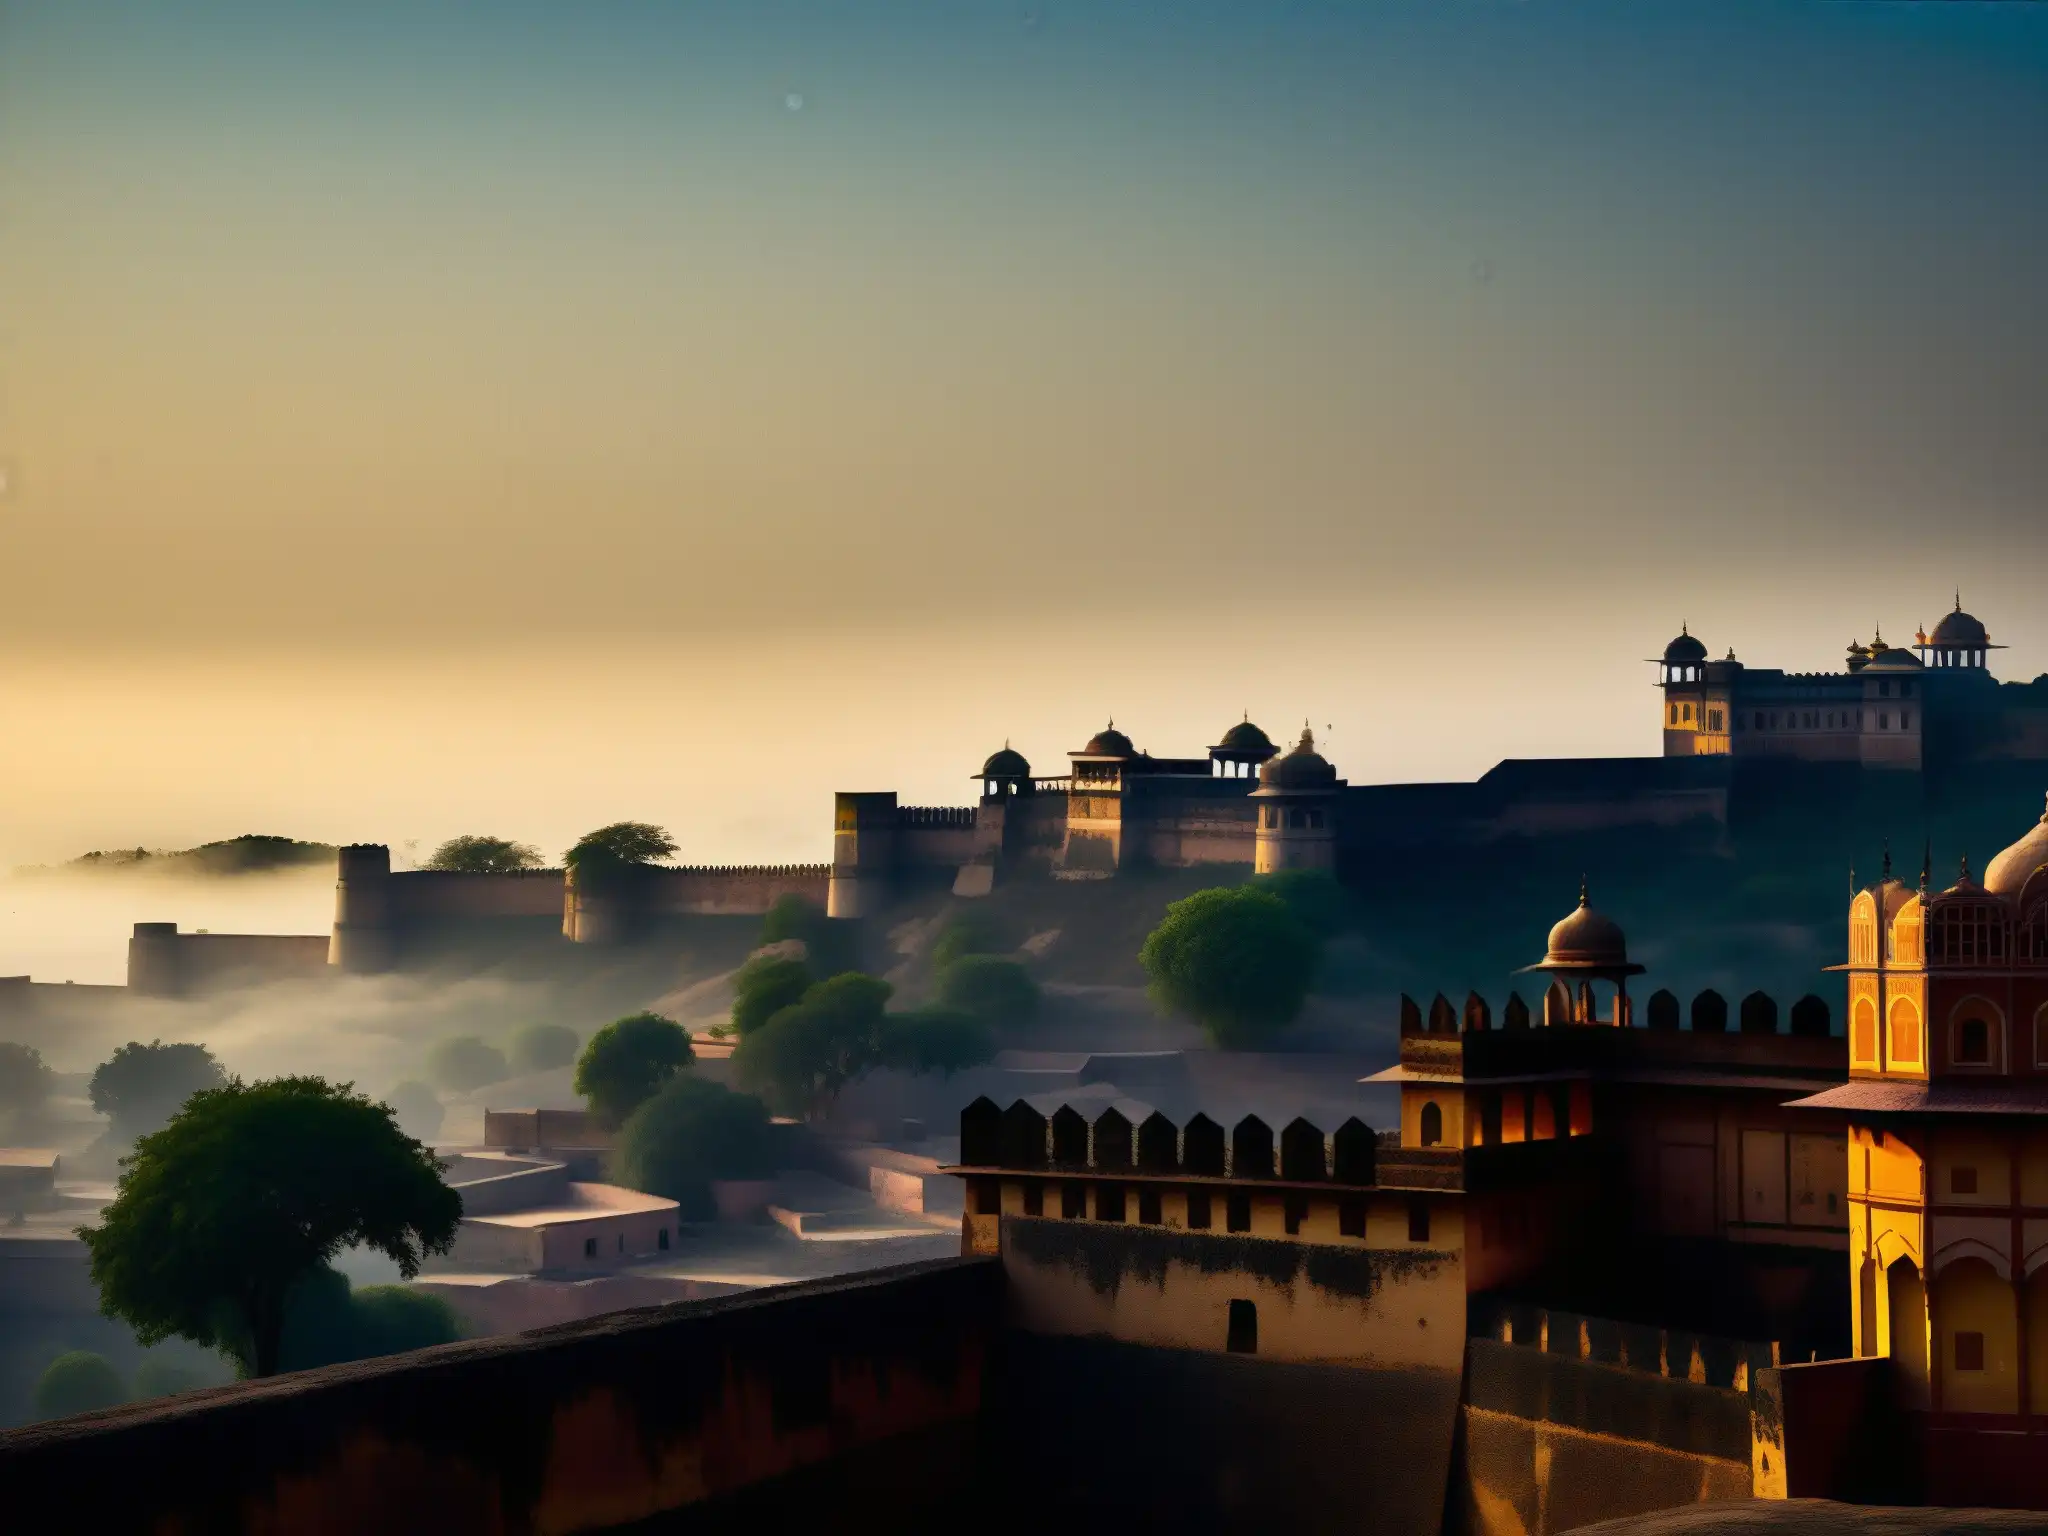 Silueta misteriosa de los antiguos muros de los Fuertes de Jaipur, envueltos en la luz de la luna y la niebla